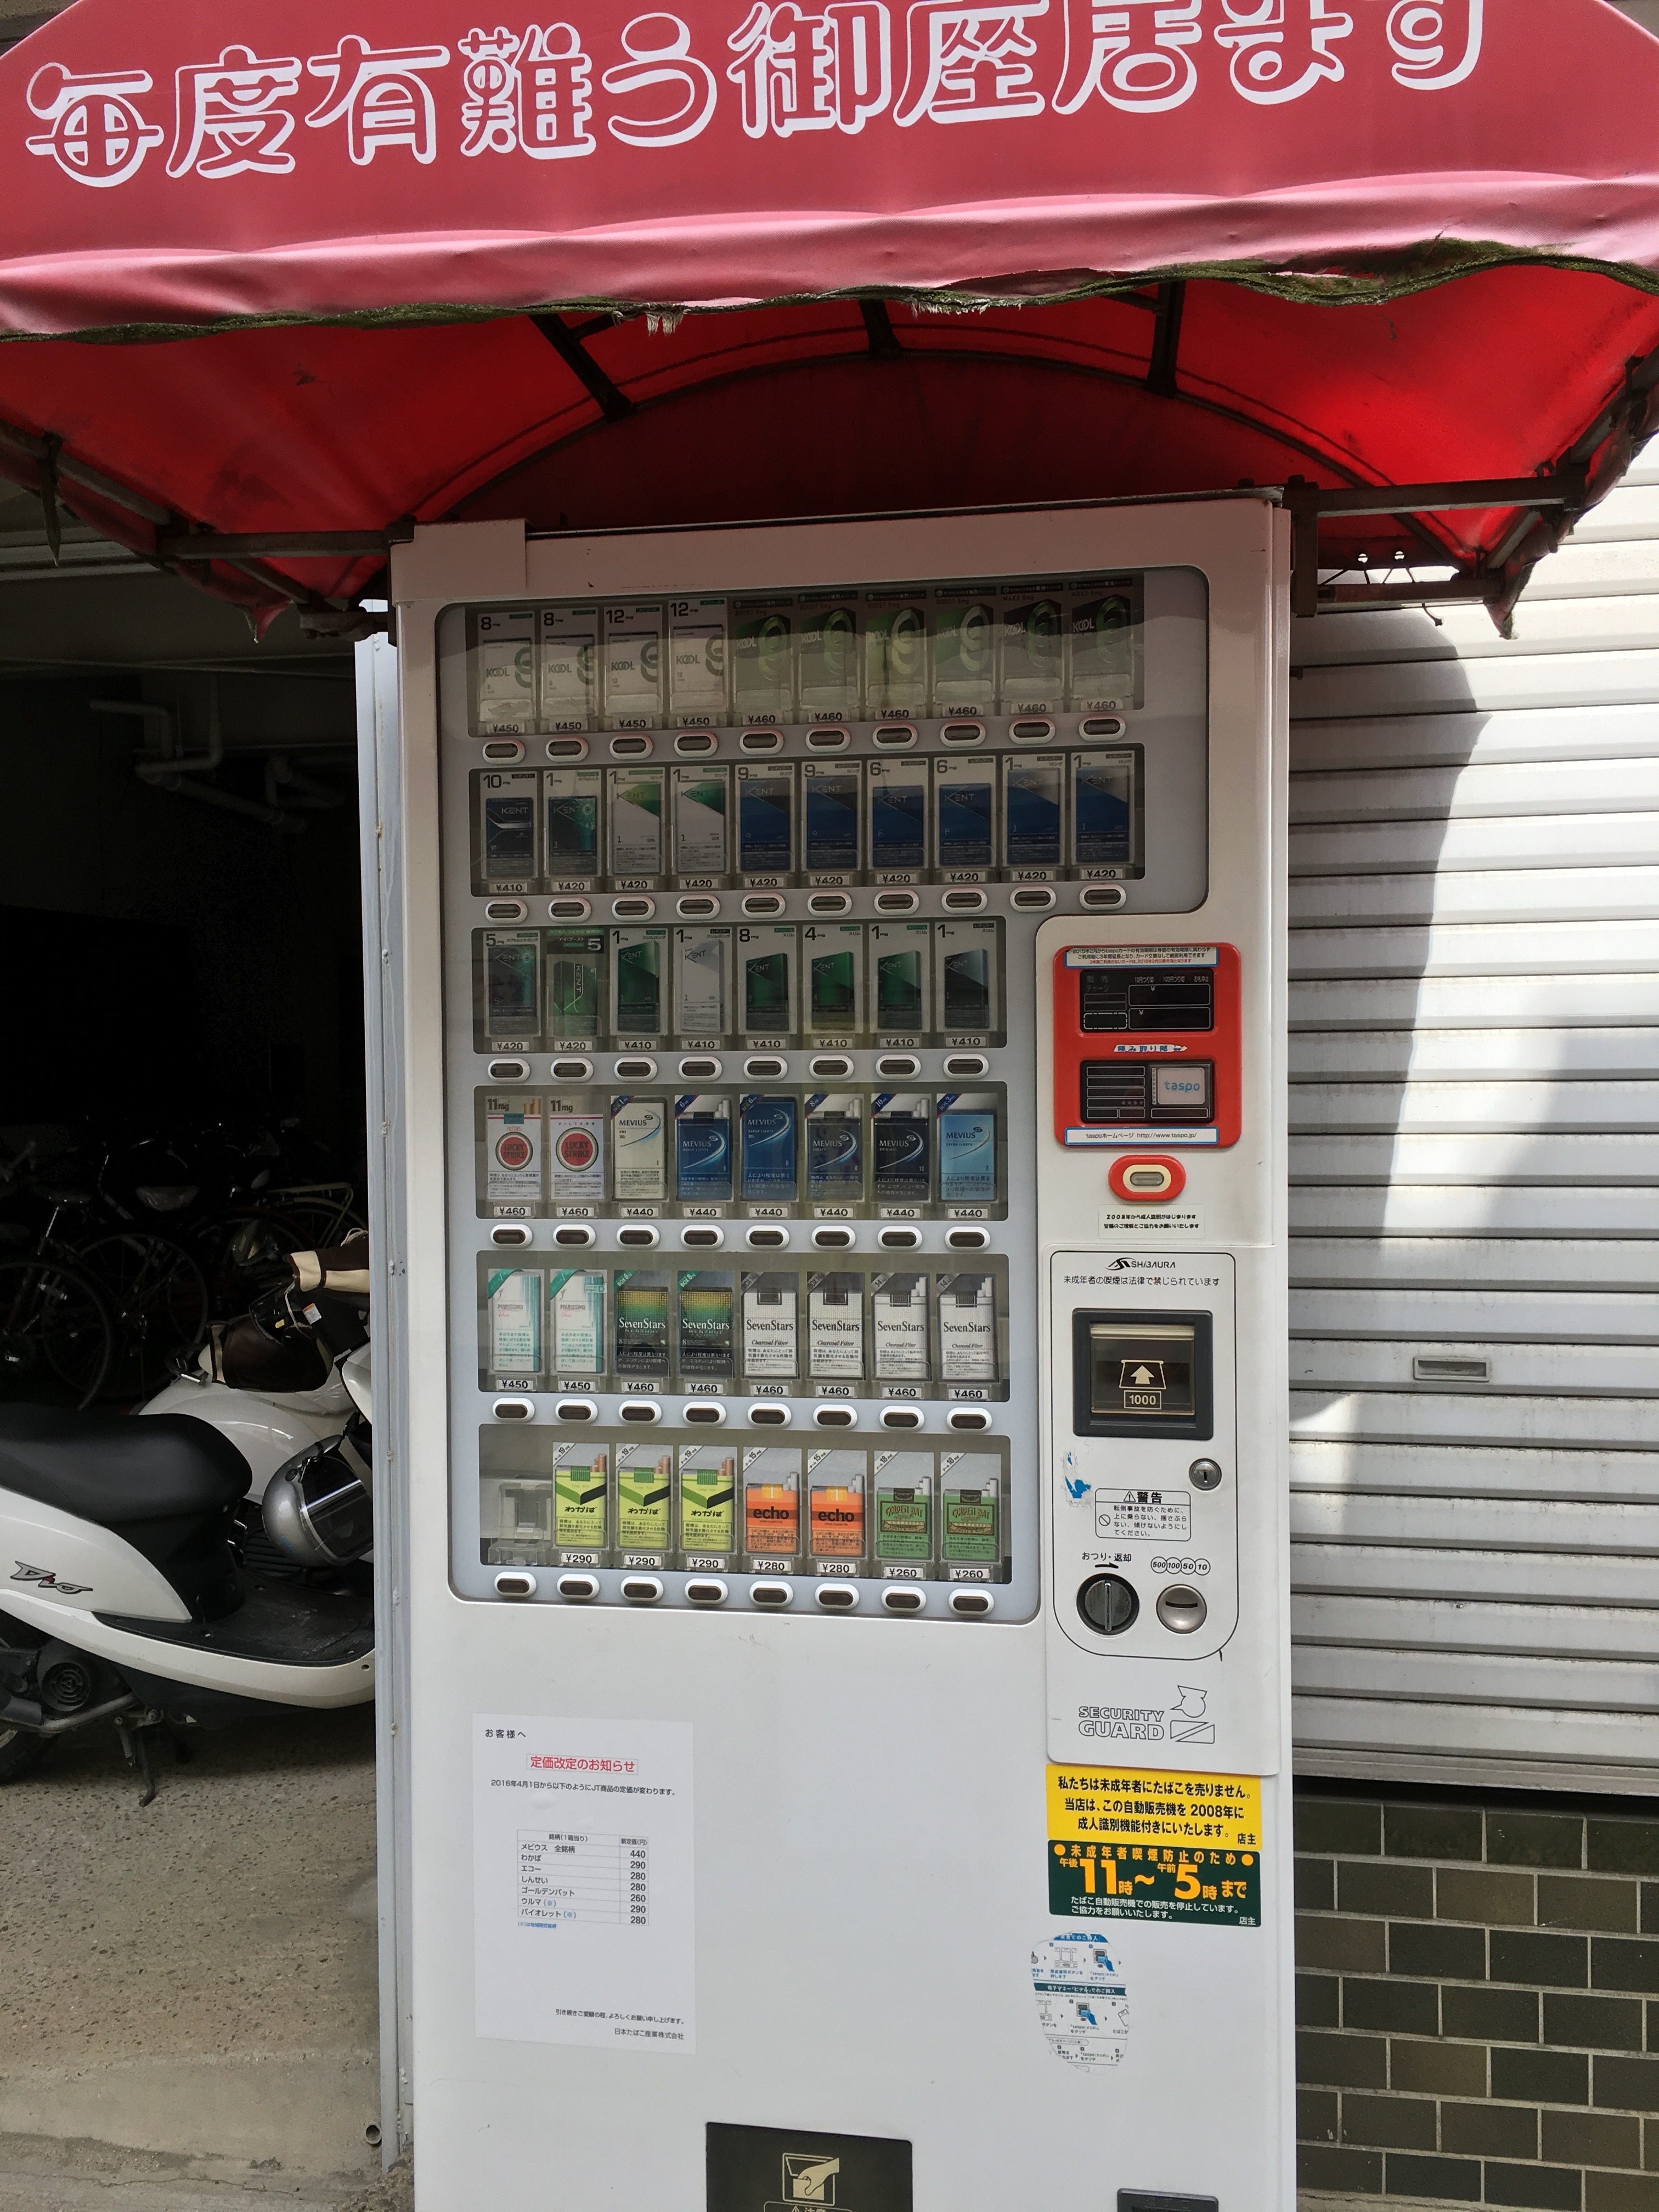 介绍日本 自動販売機 Vending Machine Introduce Japan